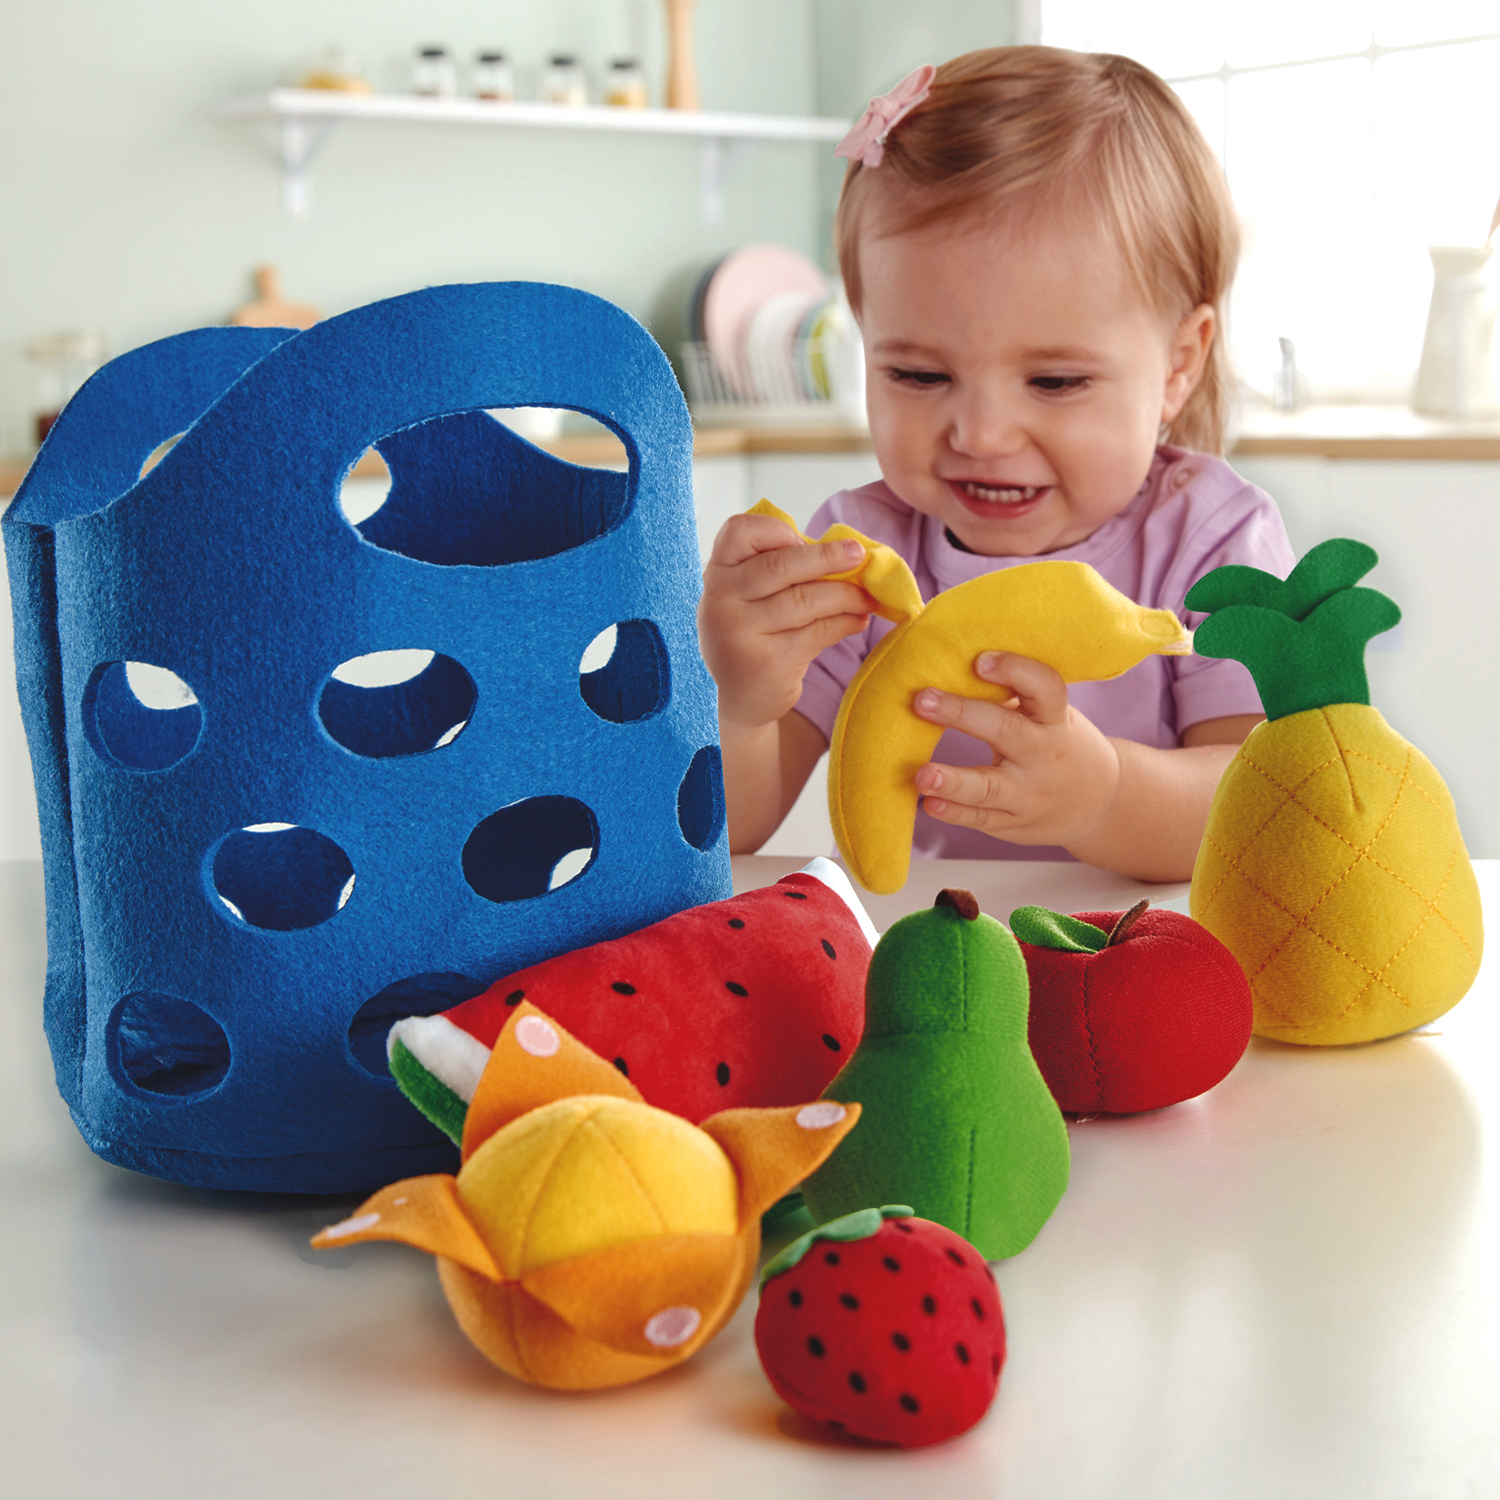 Игровой набор Корзина с фруктами Hape E3169_HP toy mix набор посуды с корзинкой рр 2015 003